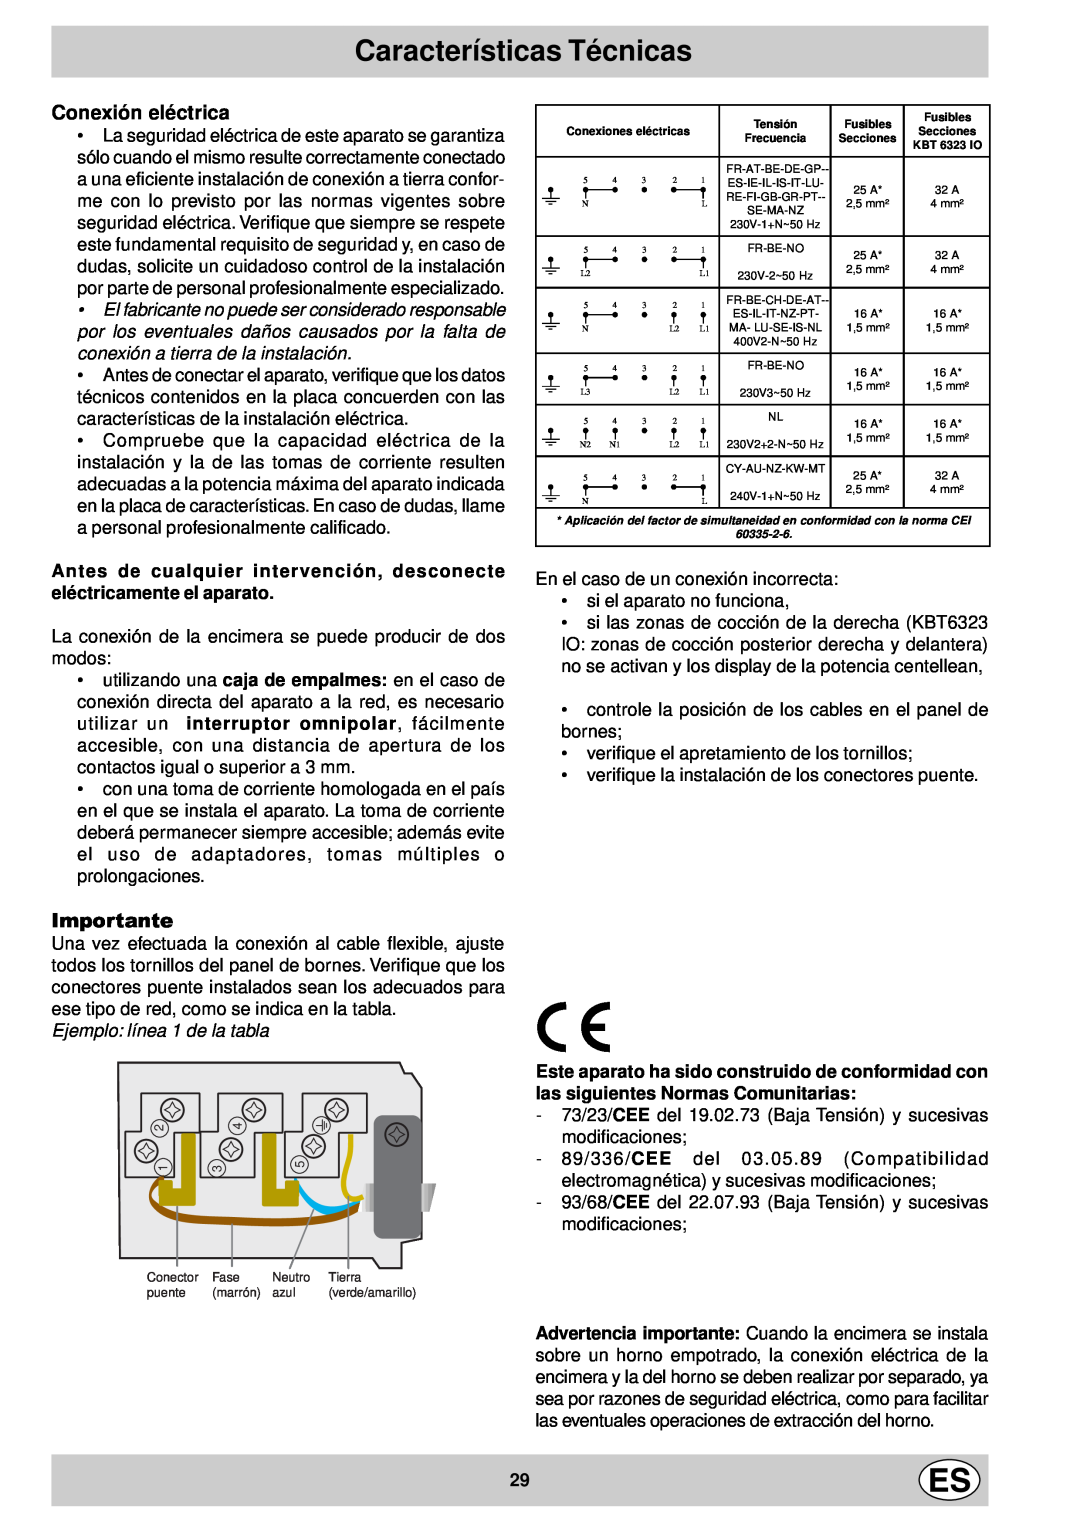 Indesit mk 64 r manual Características Técnicas, Conexión eléctrica, Importante, Ejemplo línea 1 de la tabla 